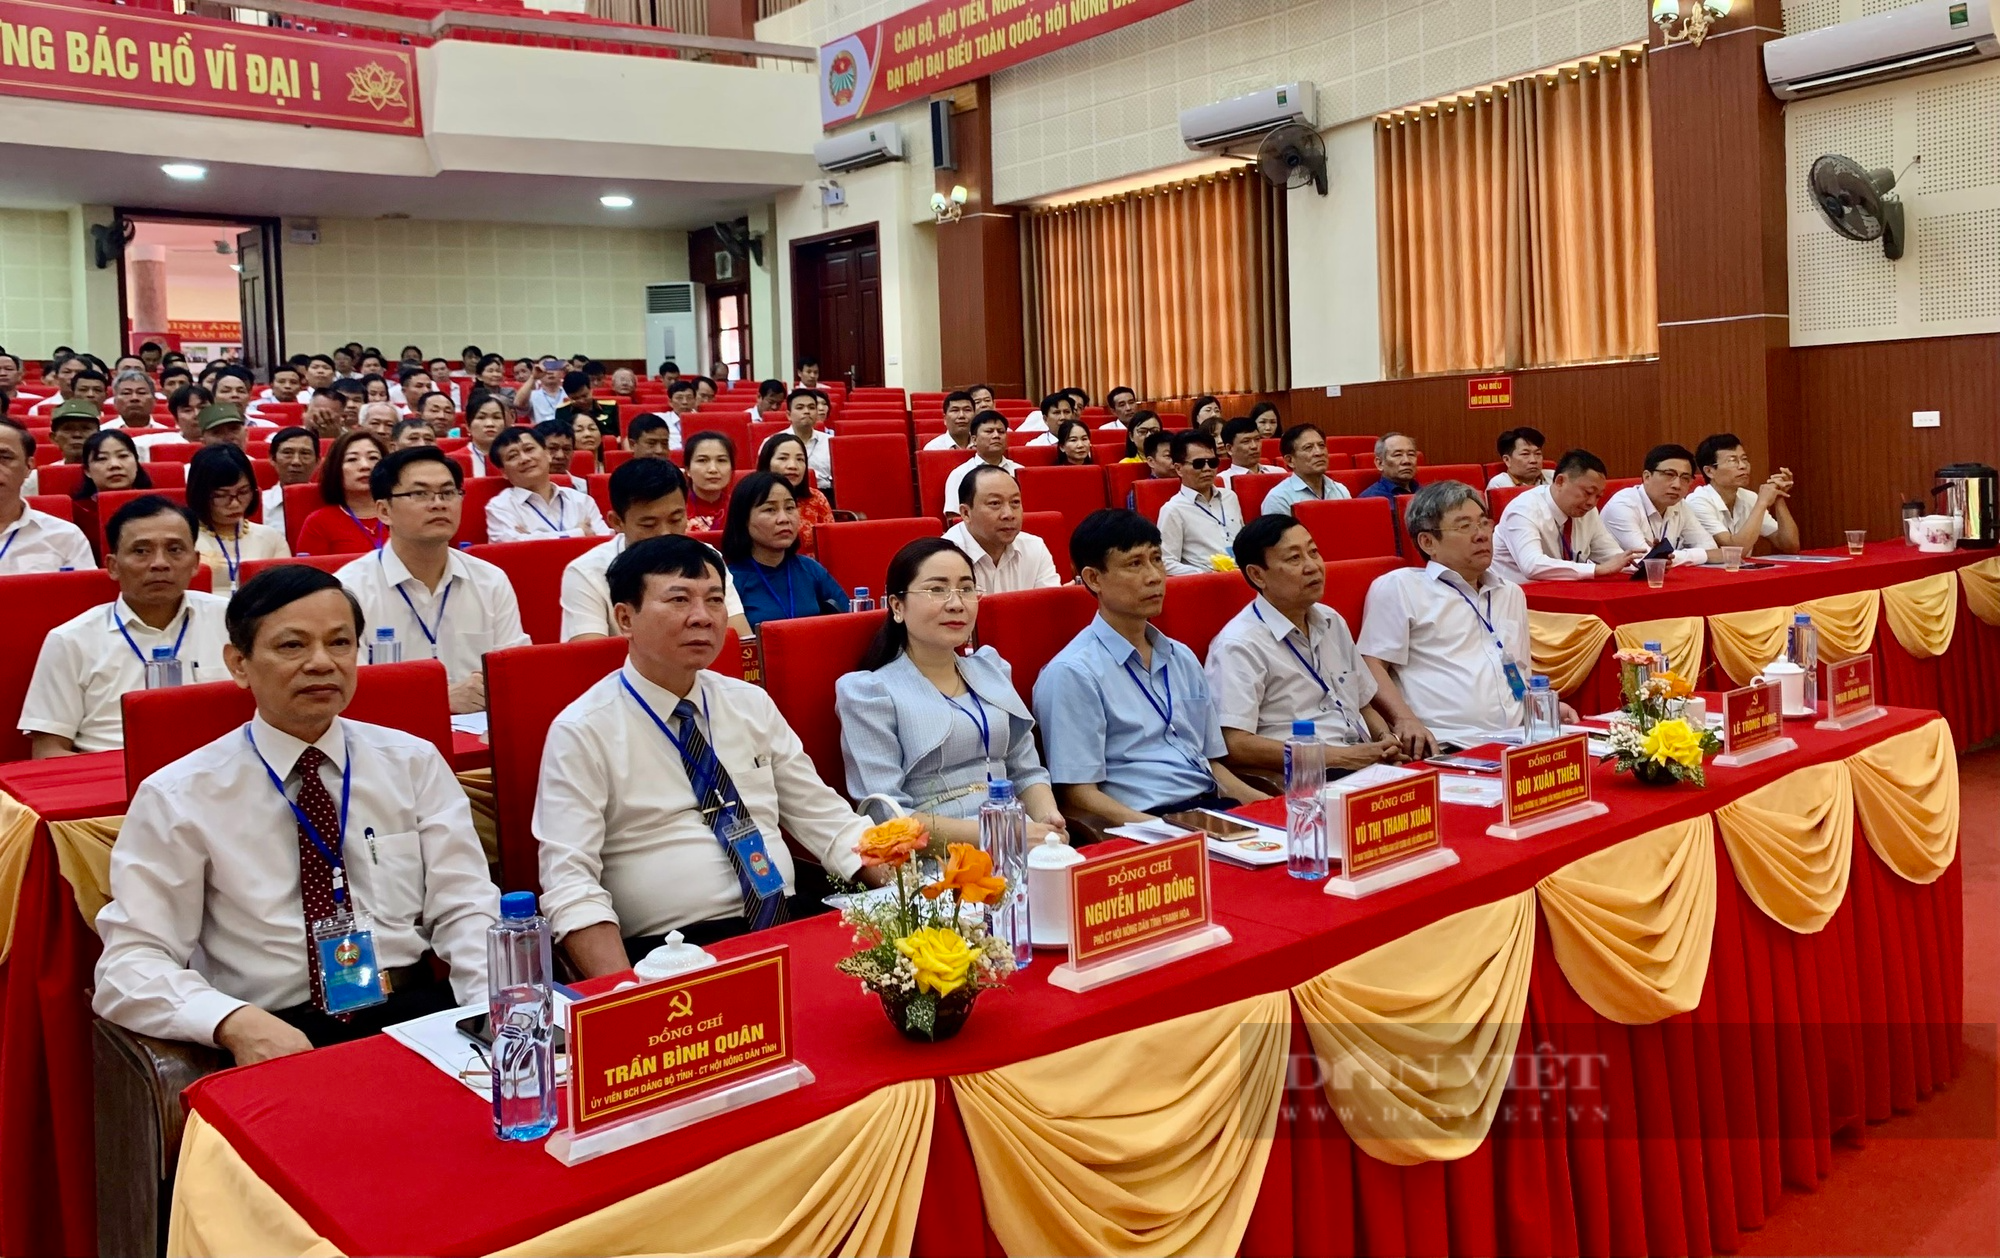 Đại hội đại biểu Hội Nông dân huyện Nông Cống, bà Trần Thị Huế tái cử Chủ tịch - Ảnh 1.